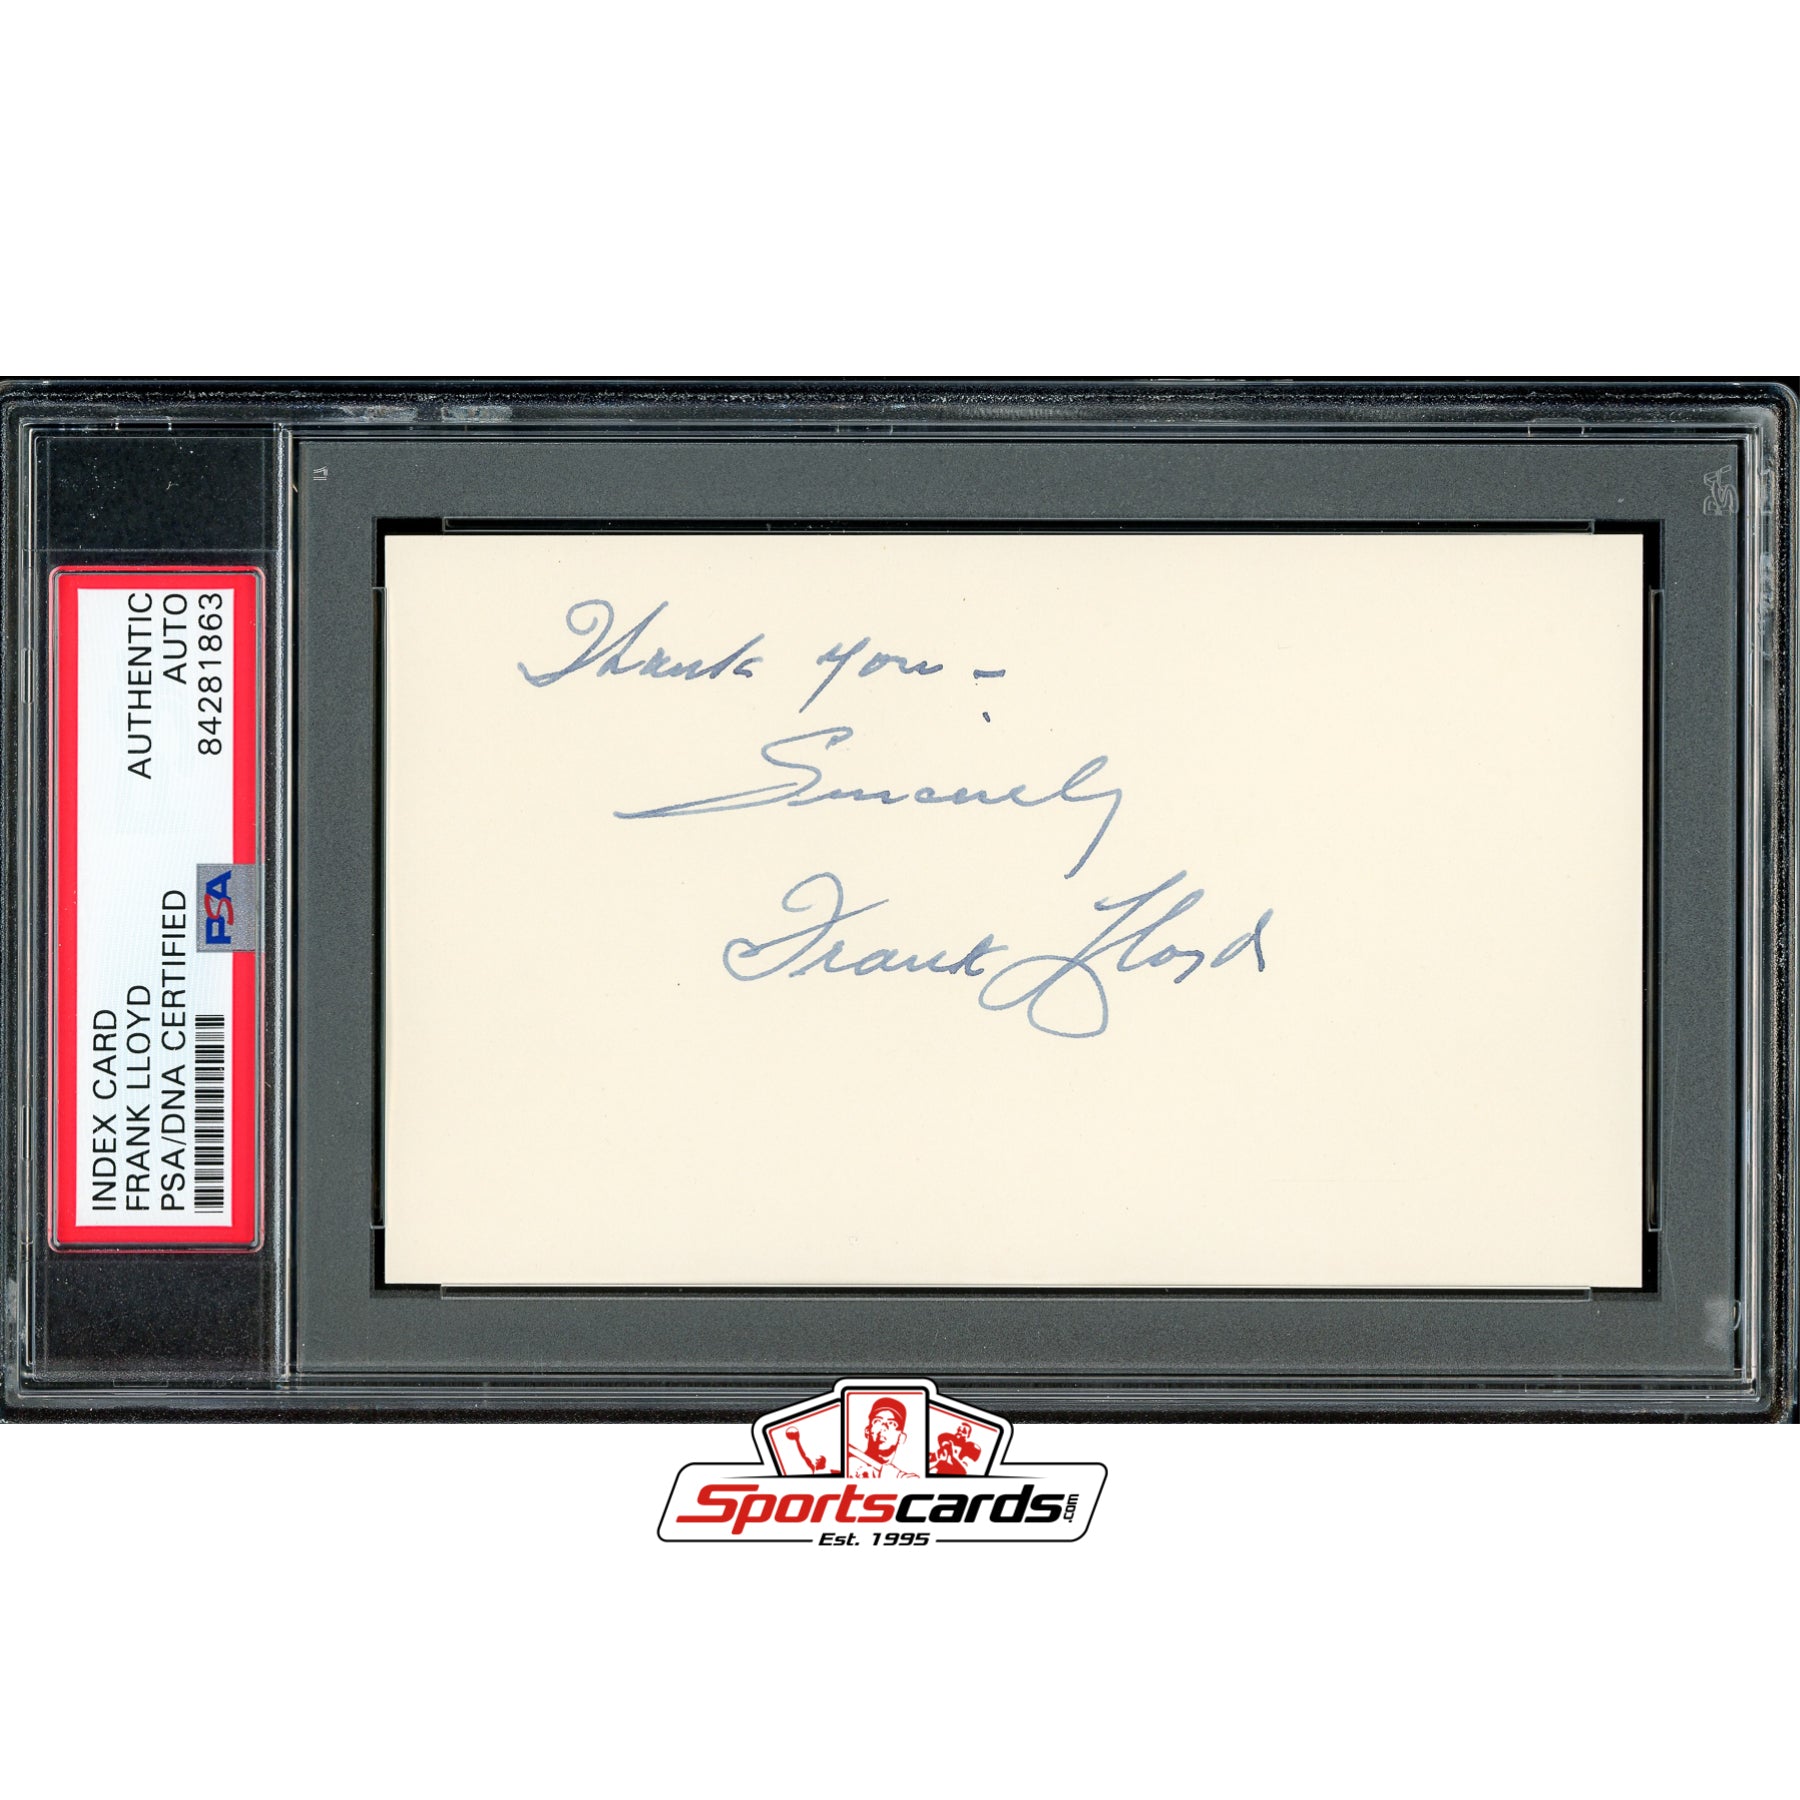 Frank Lloyd (d.1960) Signed 3x5 Index Card Autograph PSA/DNA